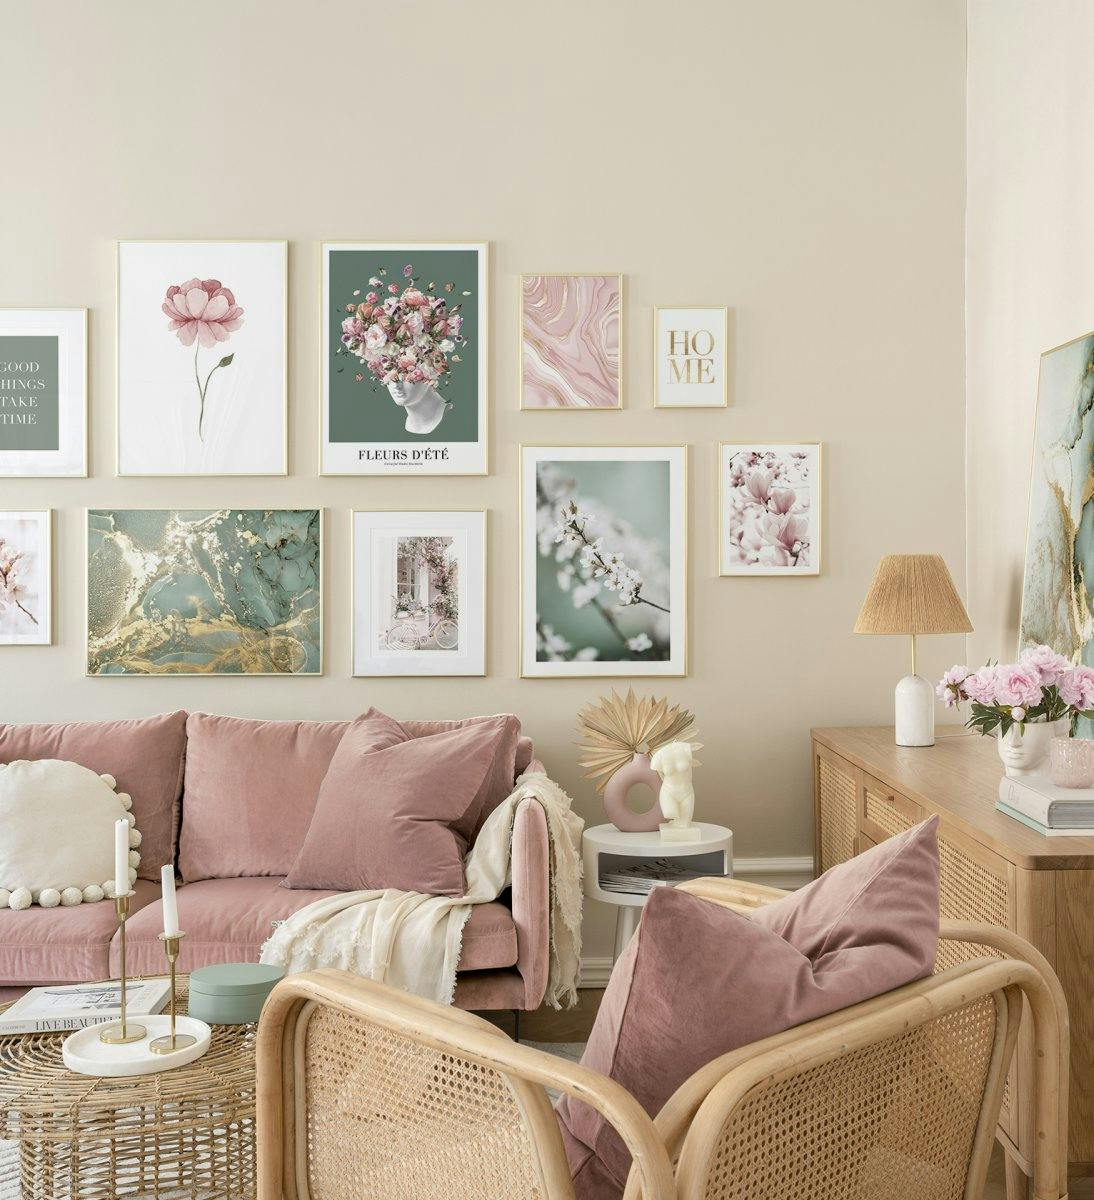 Pared de la galería de flores rosas y verdes con marcos dorados para la sala de estar